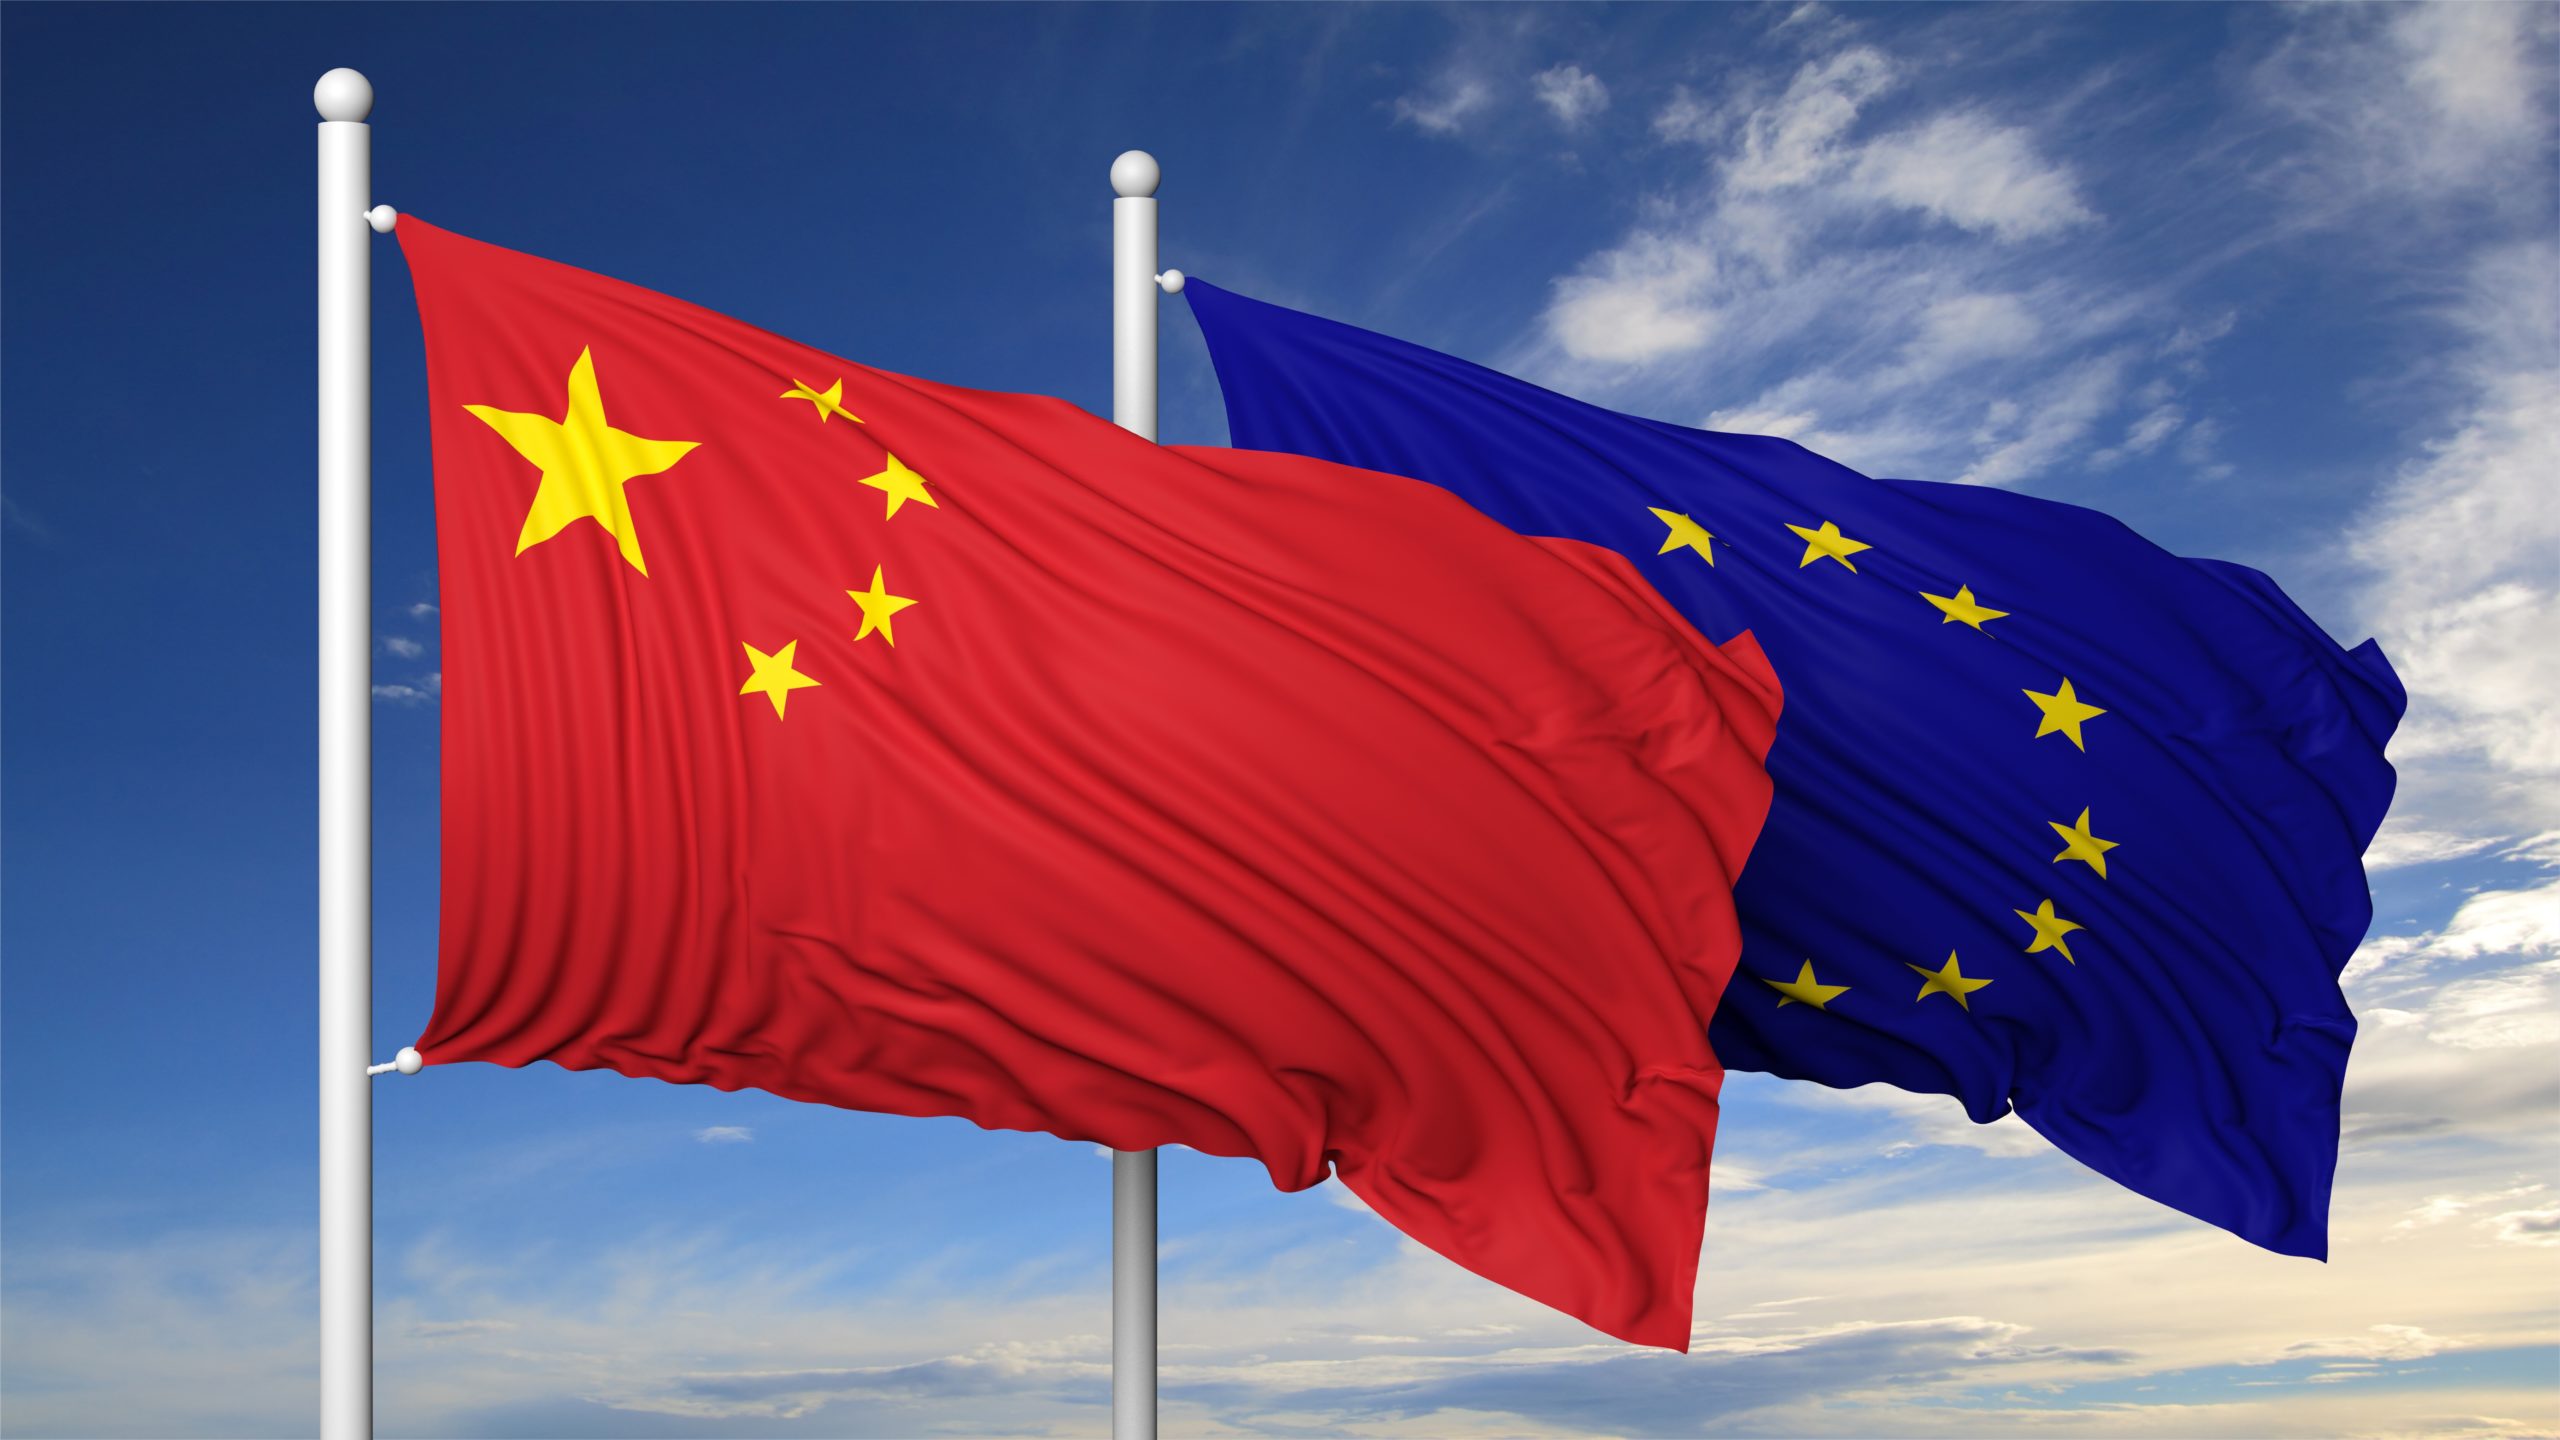 UE-Chine: Mise en garde de Pékin contre toute sanction visant ses entreprises